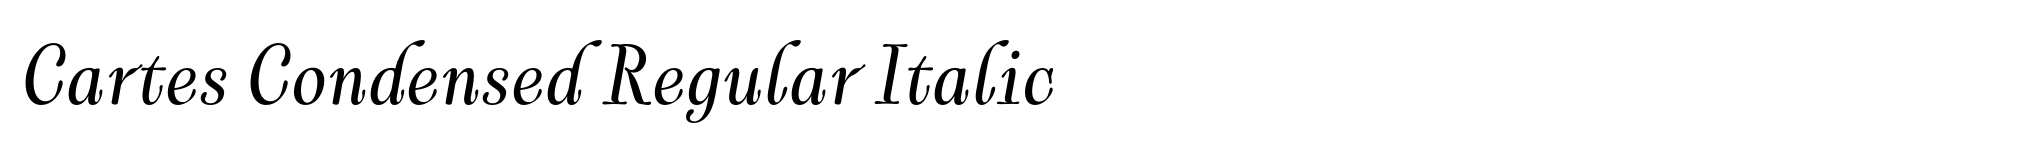 Cartes Condensed Regular Italic image